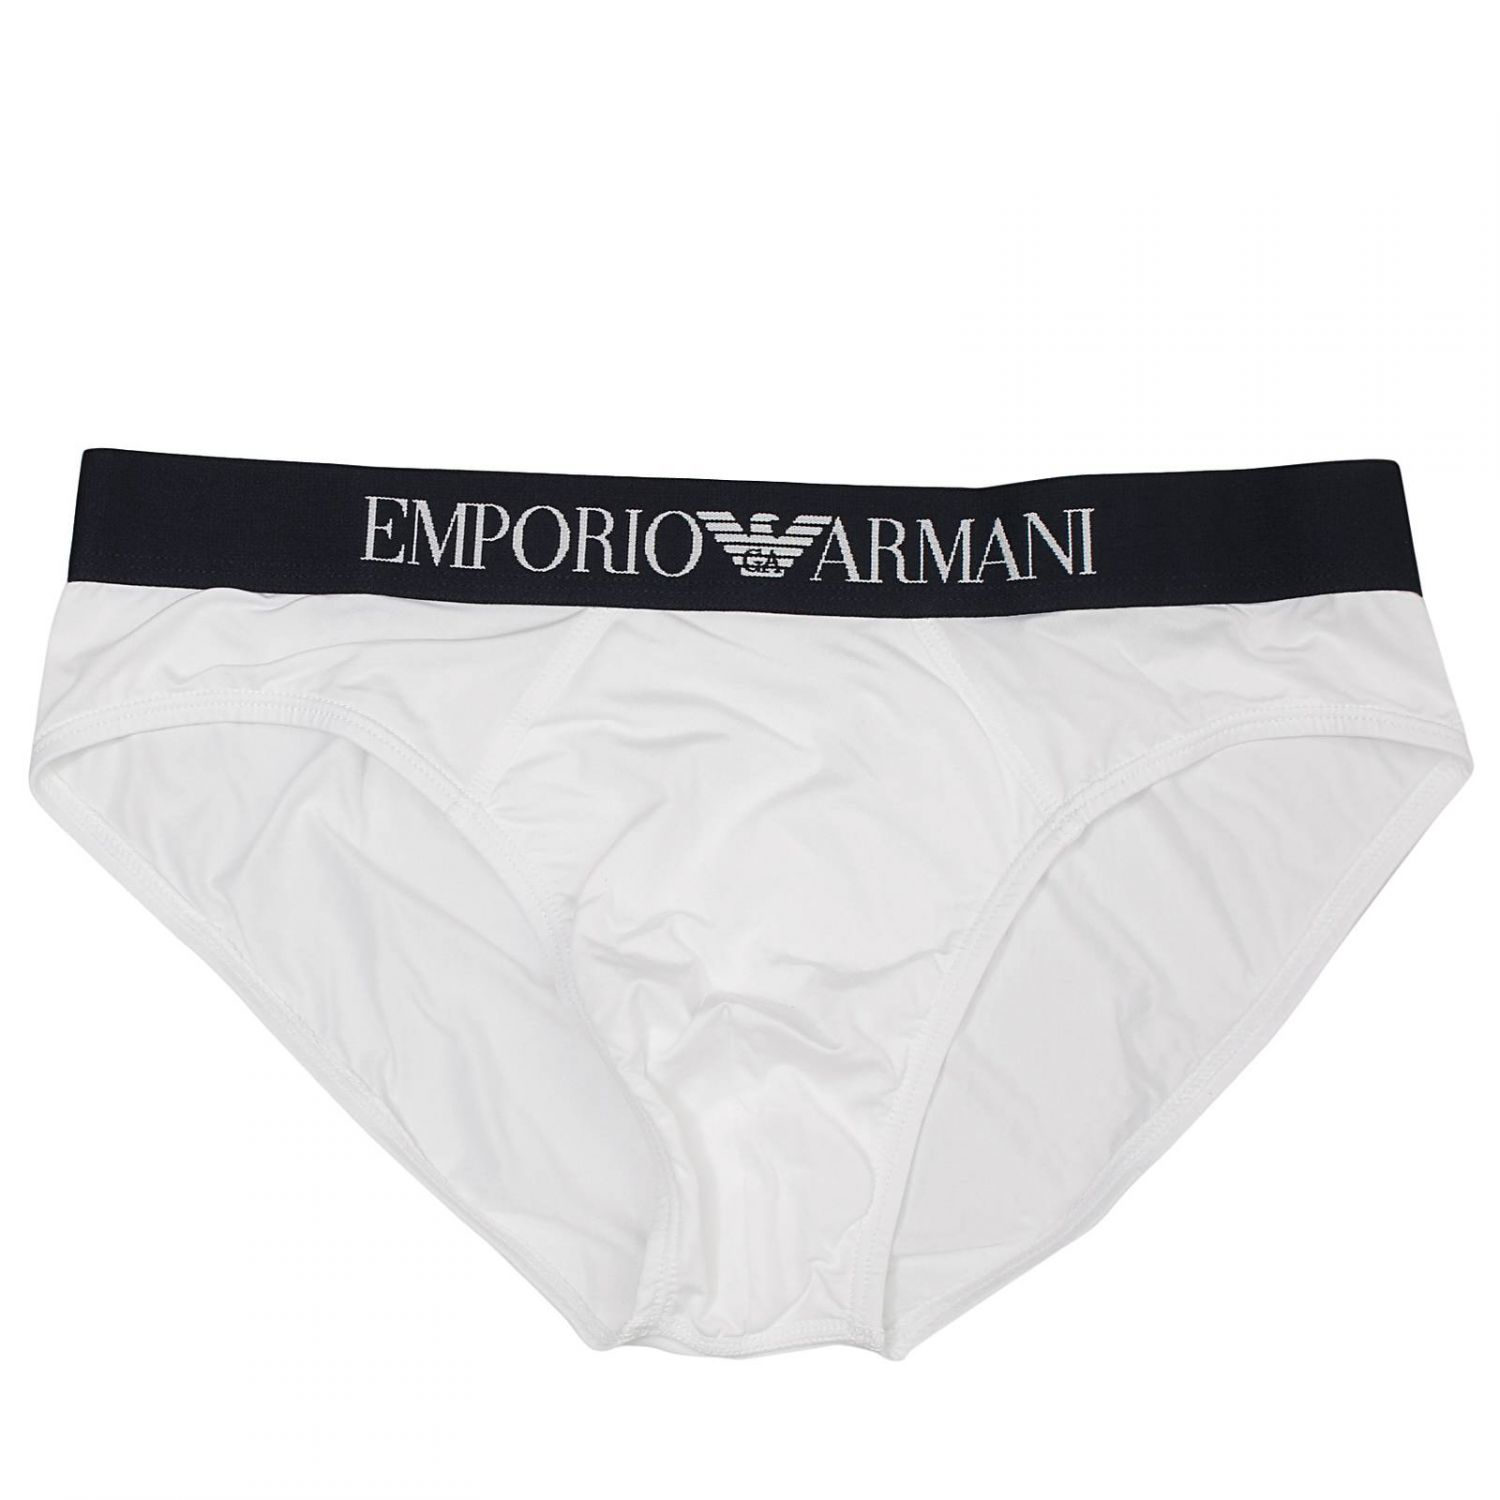 Emporio Armani Giorgio Armani Men's Underwear in White for Men - Lyst